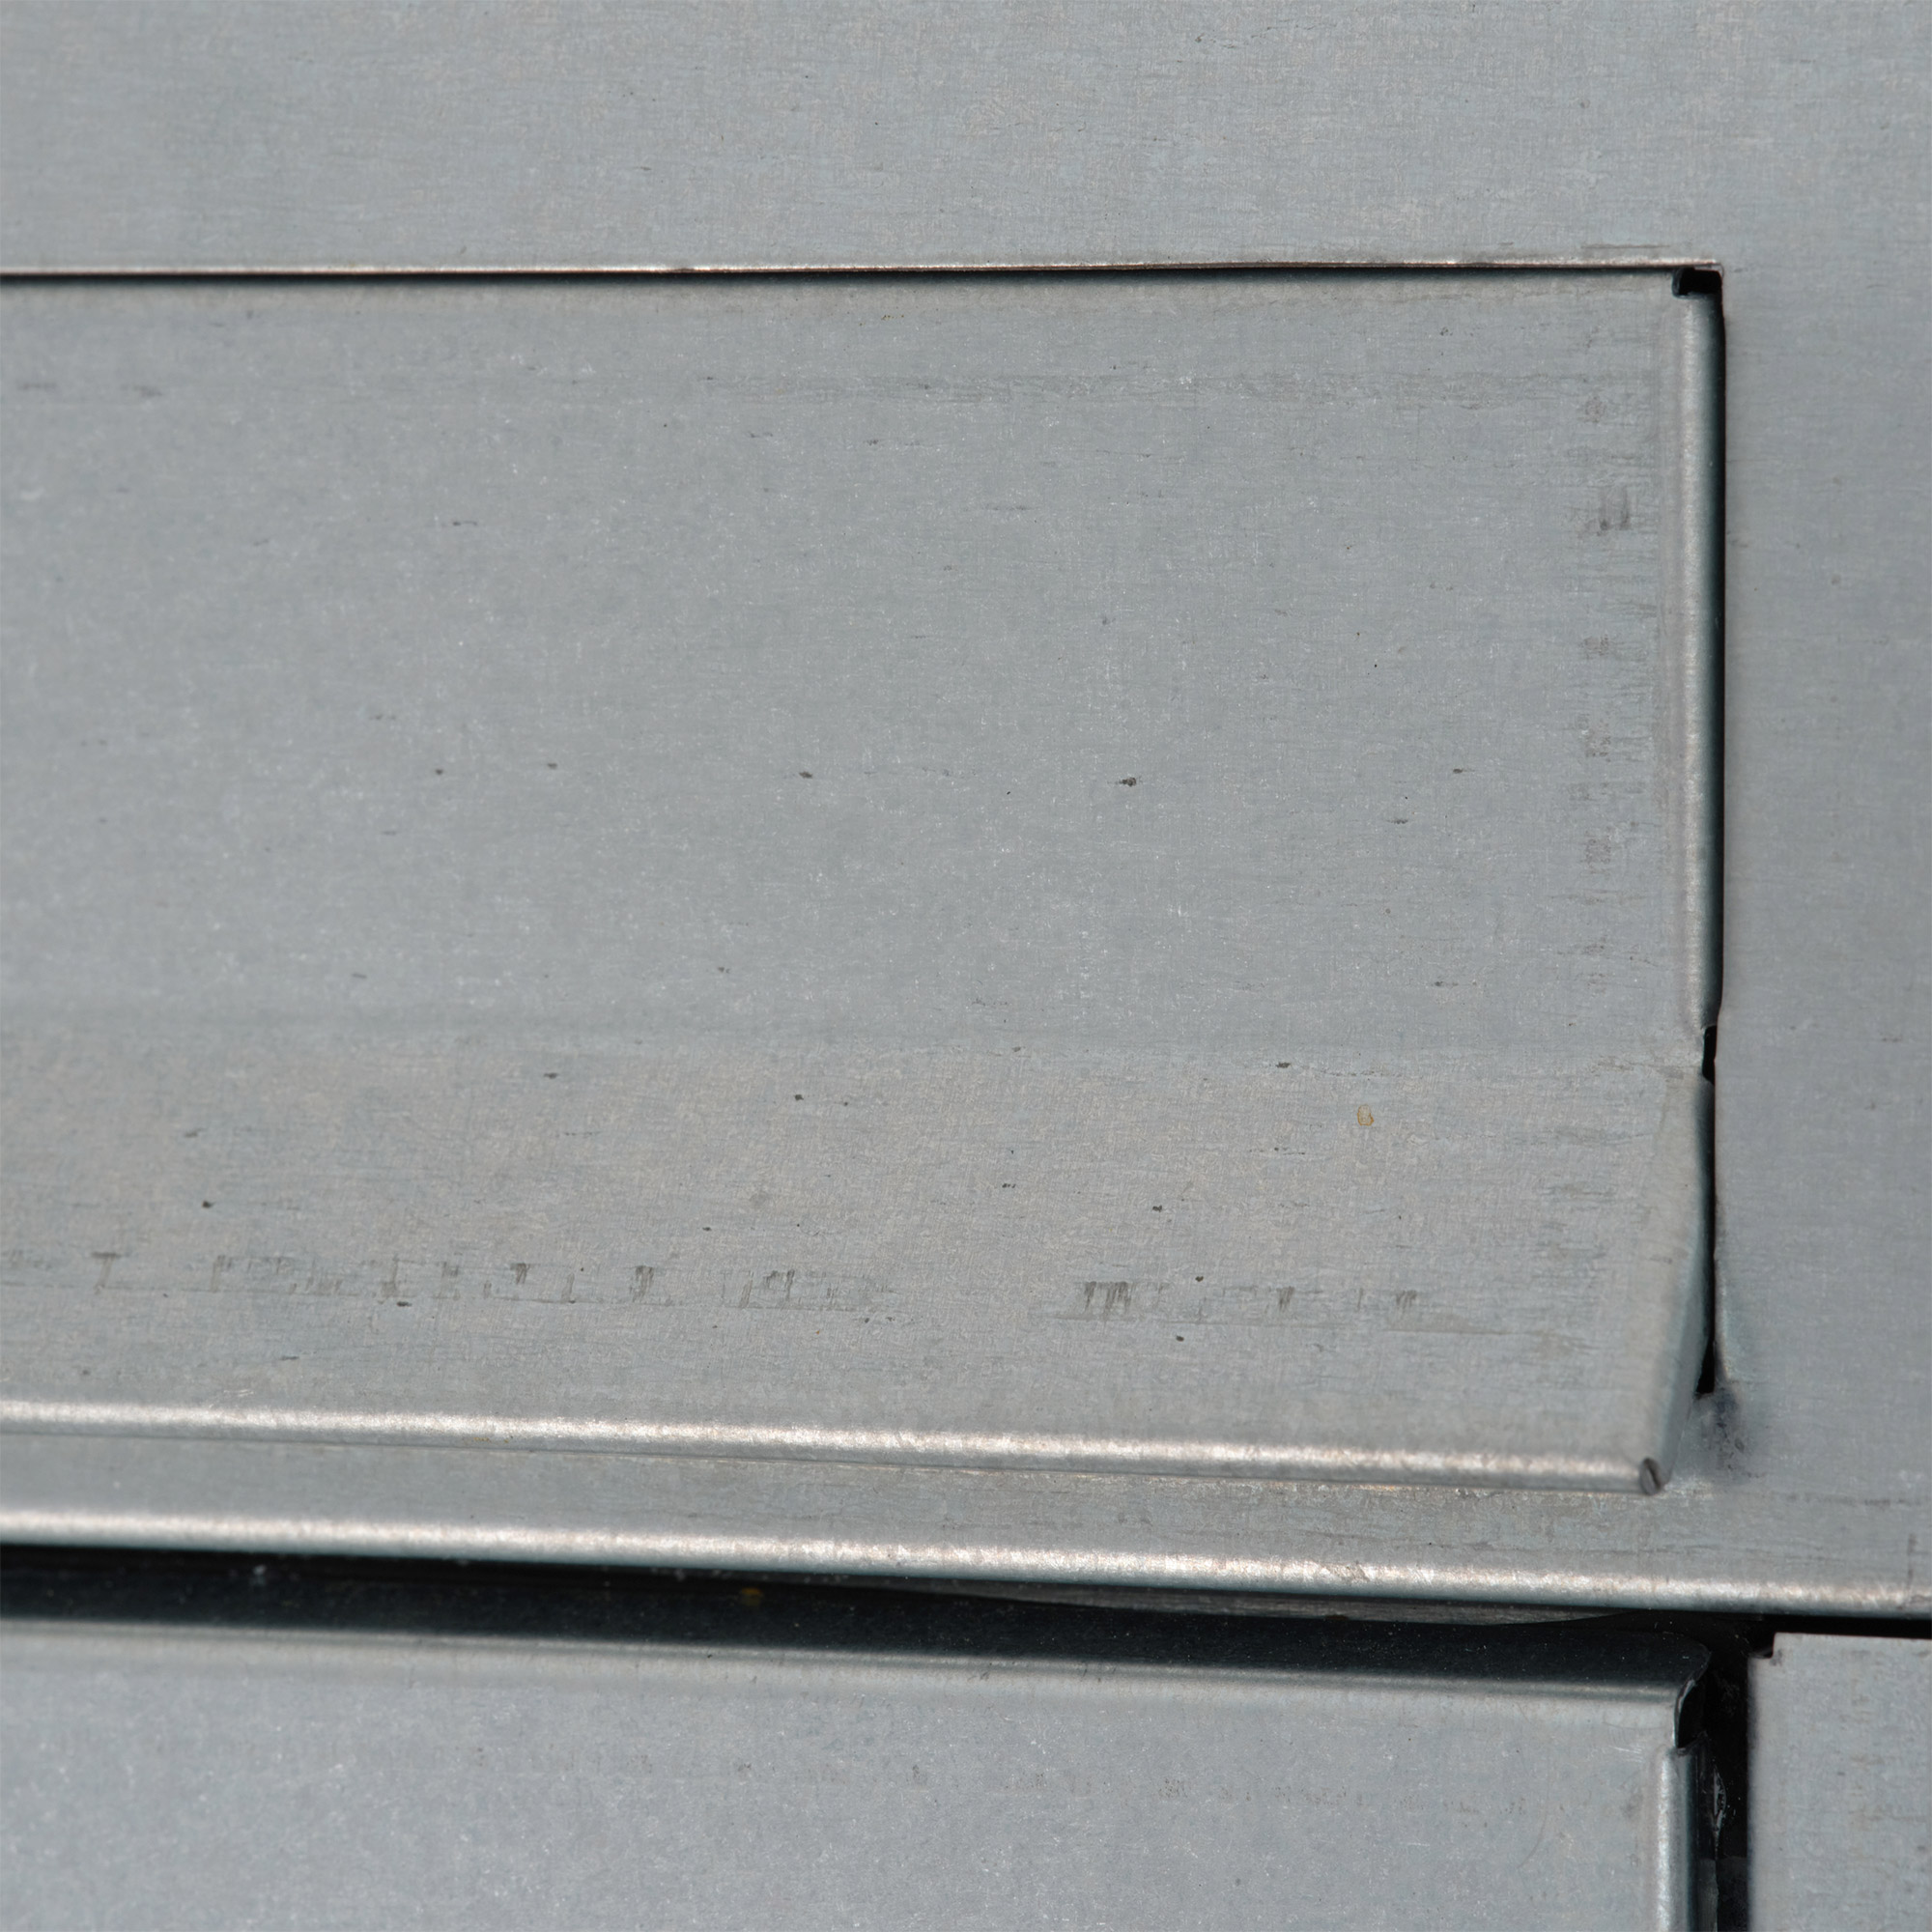 デンマークポスト シルバー ET-OT010-01-G141 シルバーはガルバリウム鋼板がそのまま仕上げなので、擦れたような風合いの部分があります